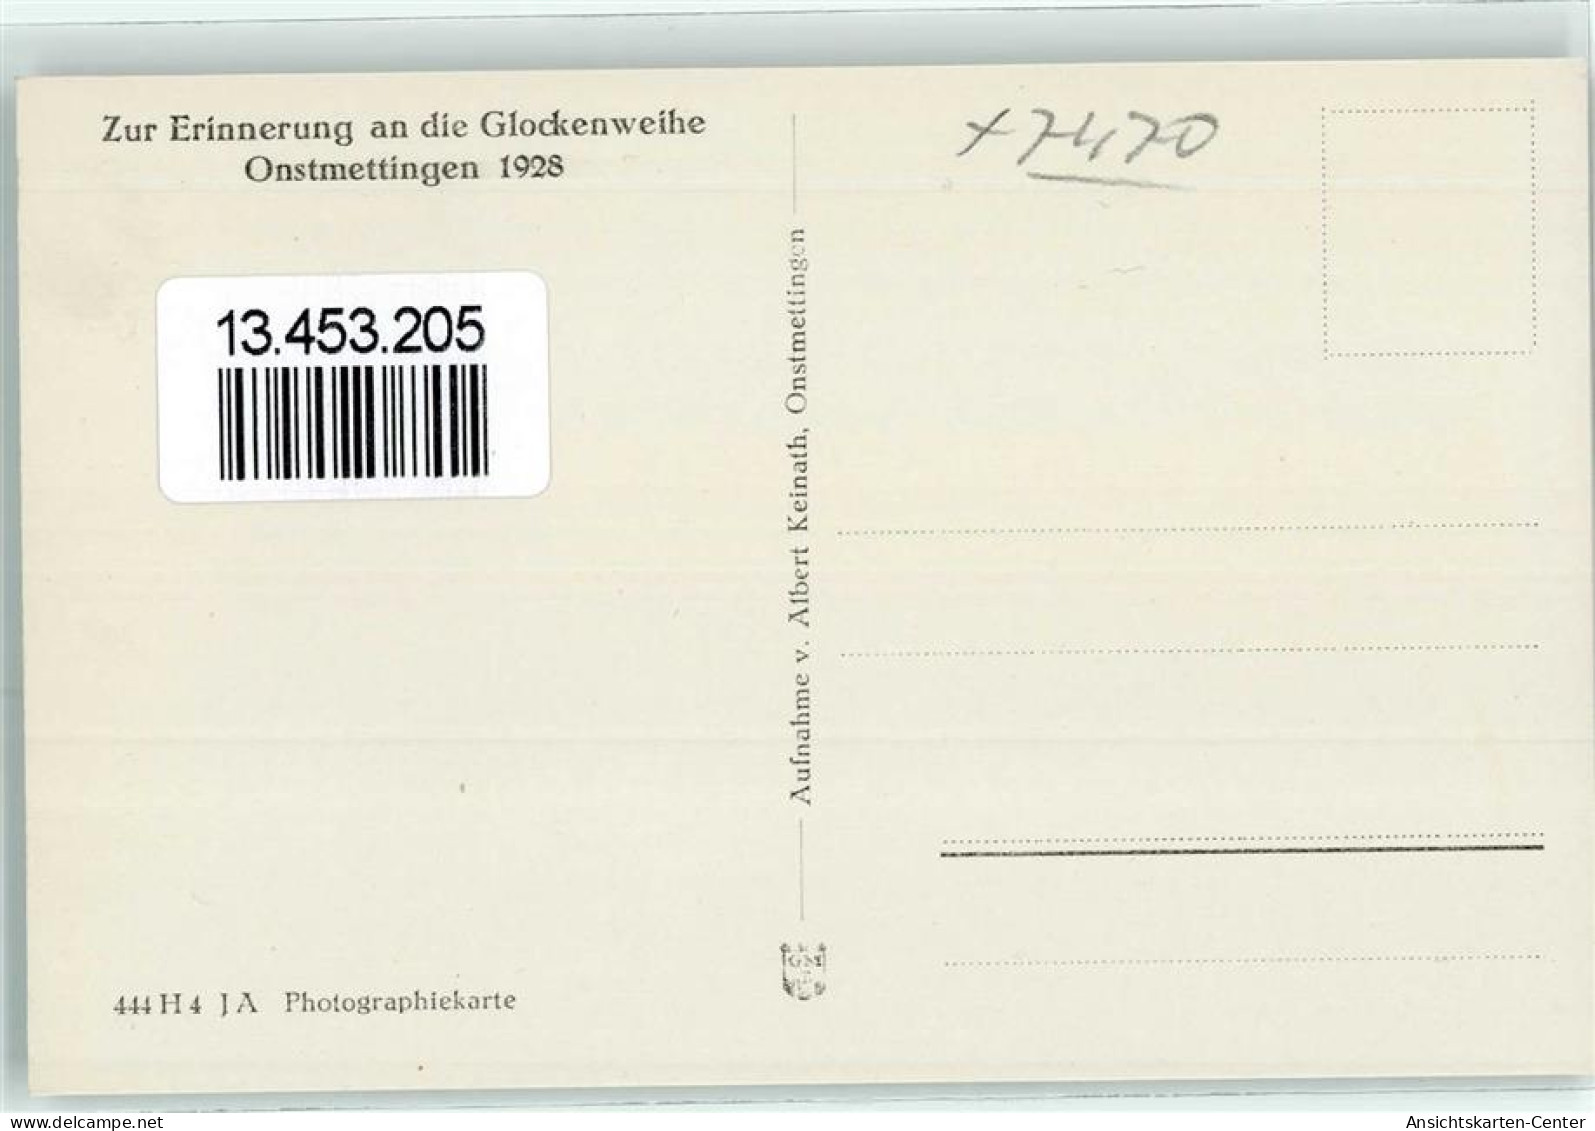 13453205 - Onstmettingen - Albstadt